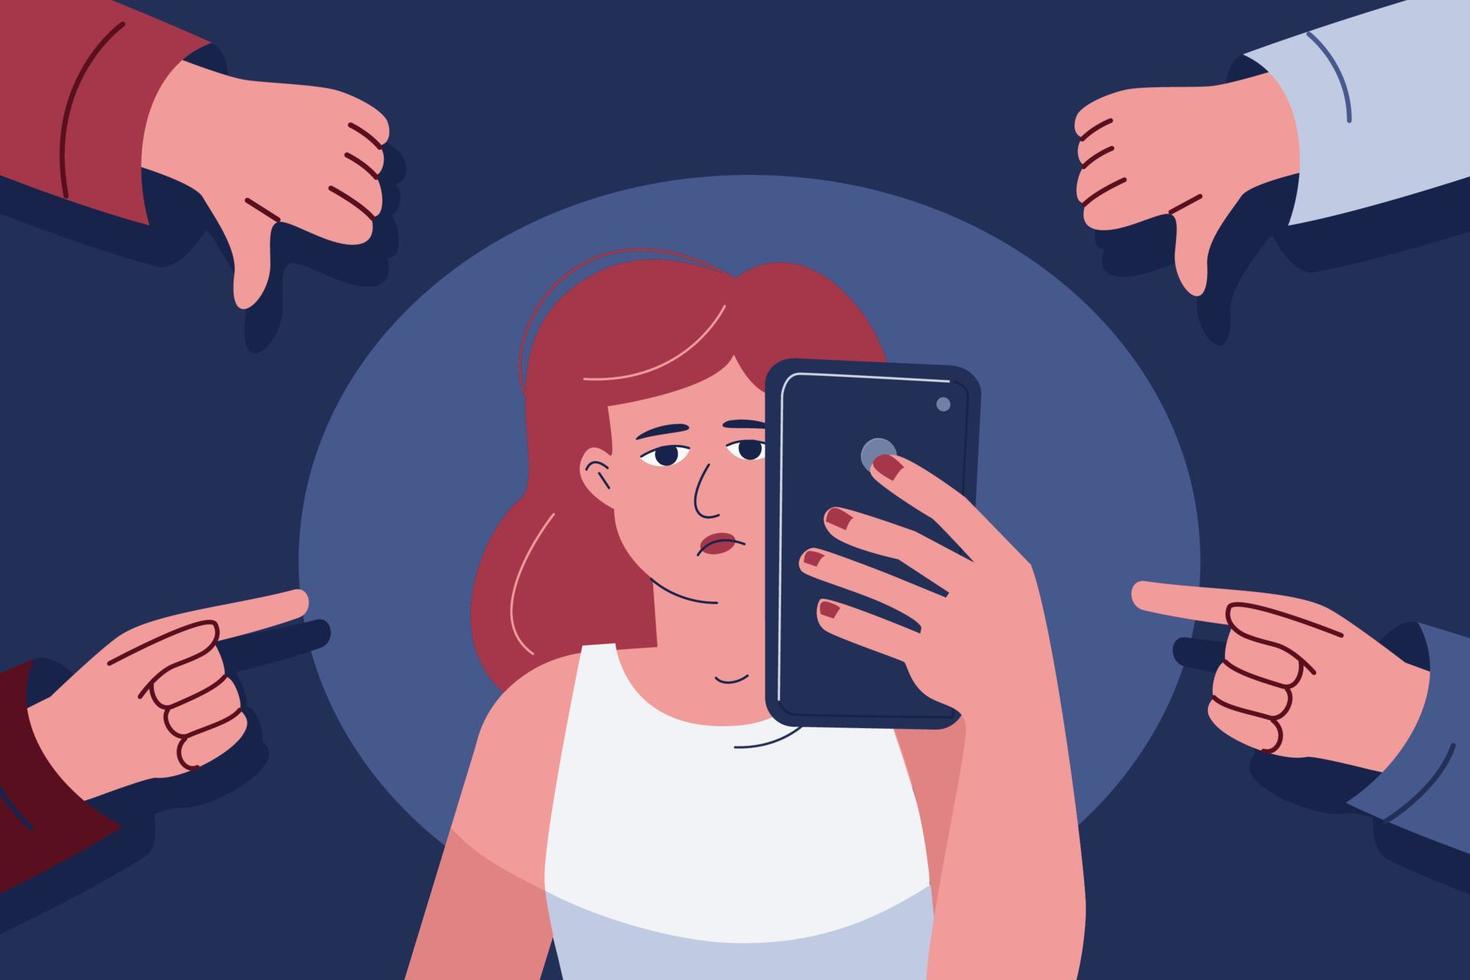 uma mulher segura um telefone na mão, condenando, envergonhando os gestos em torno dele, um símbolo de ódio e bullying online. vetor